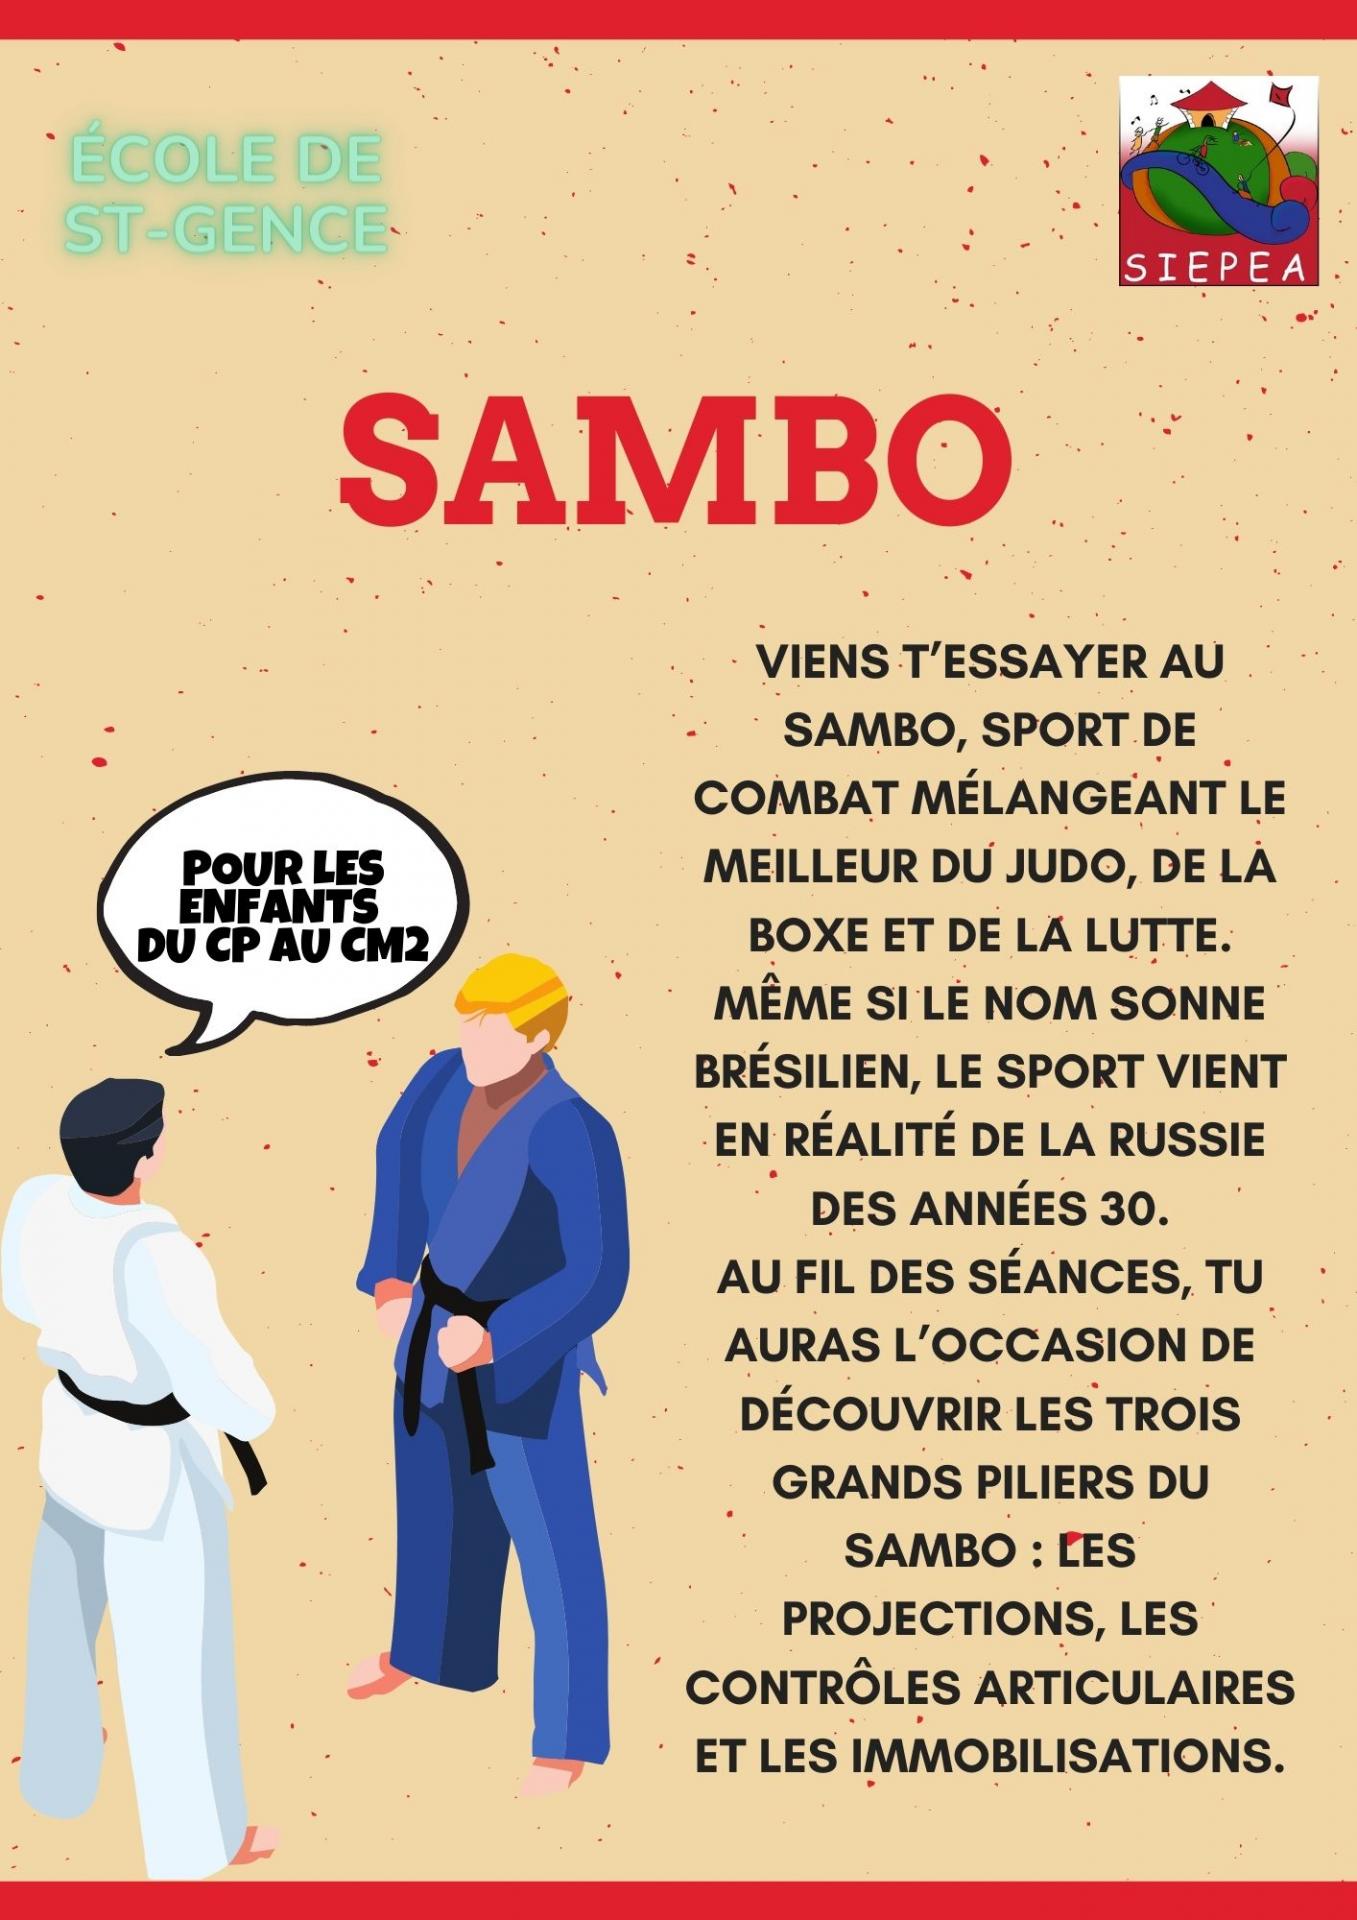 Sambo